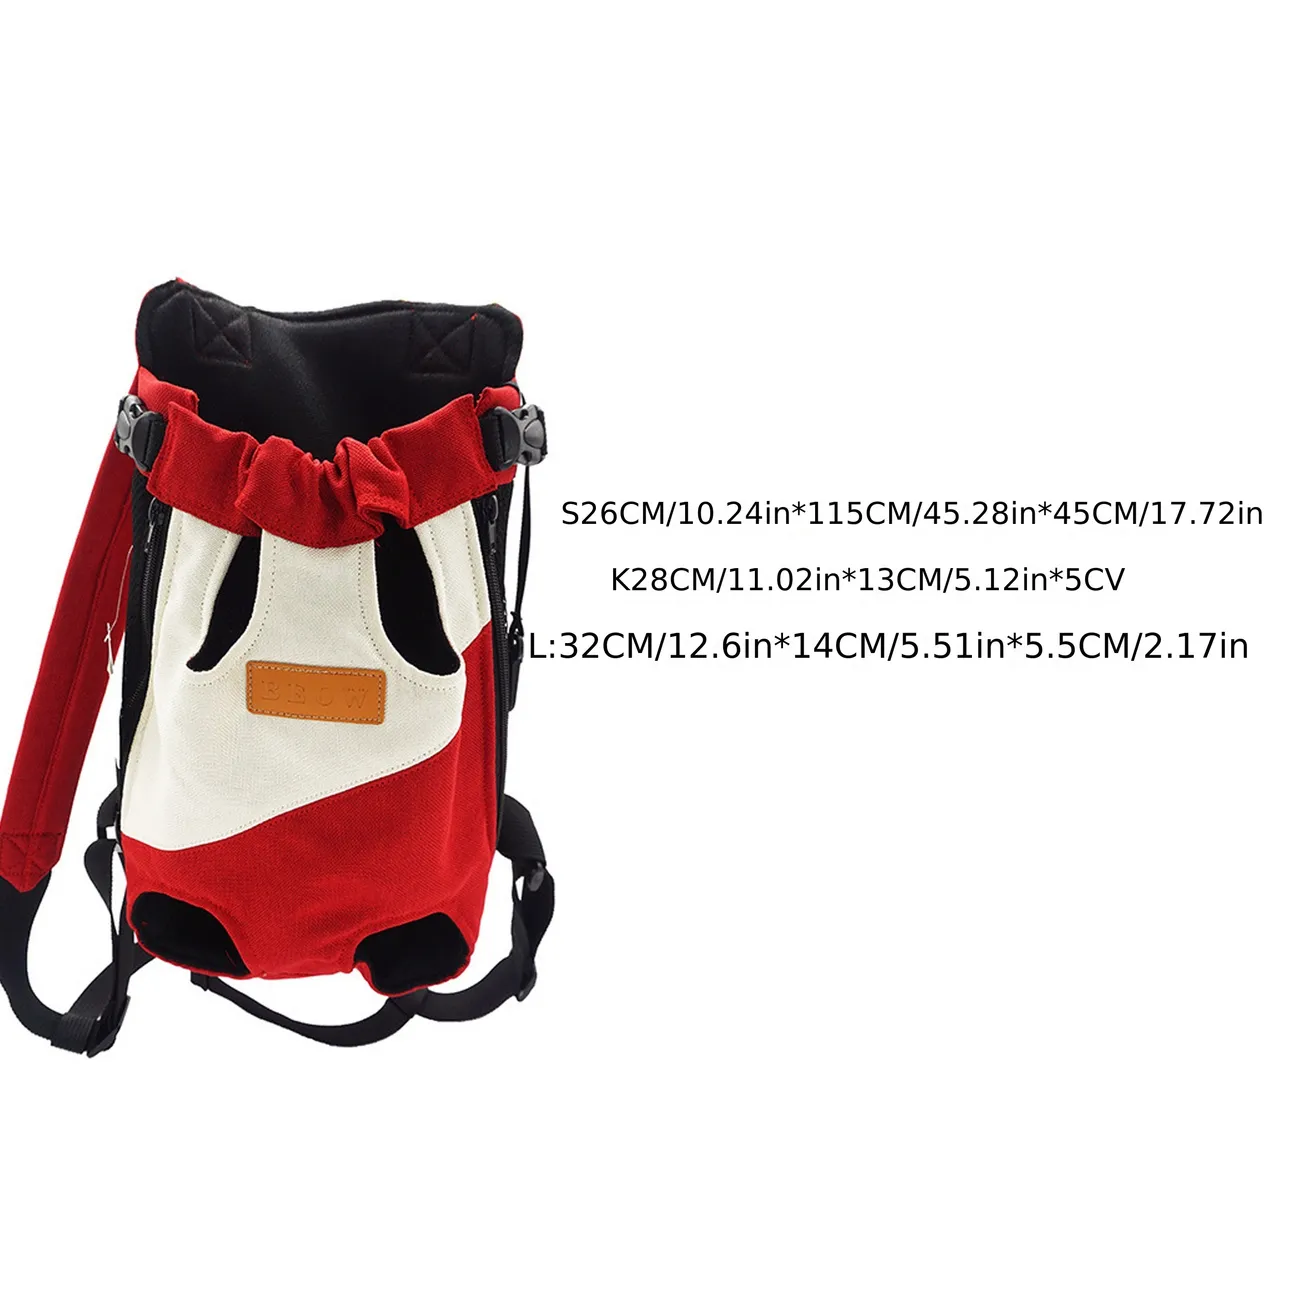 Dog Backpack Dog Bag Breathable Travel Bag Four-legged Pet